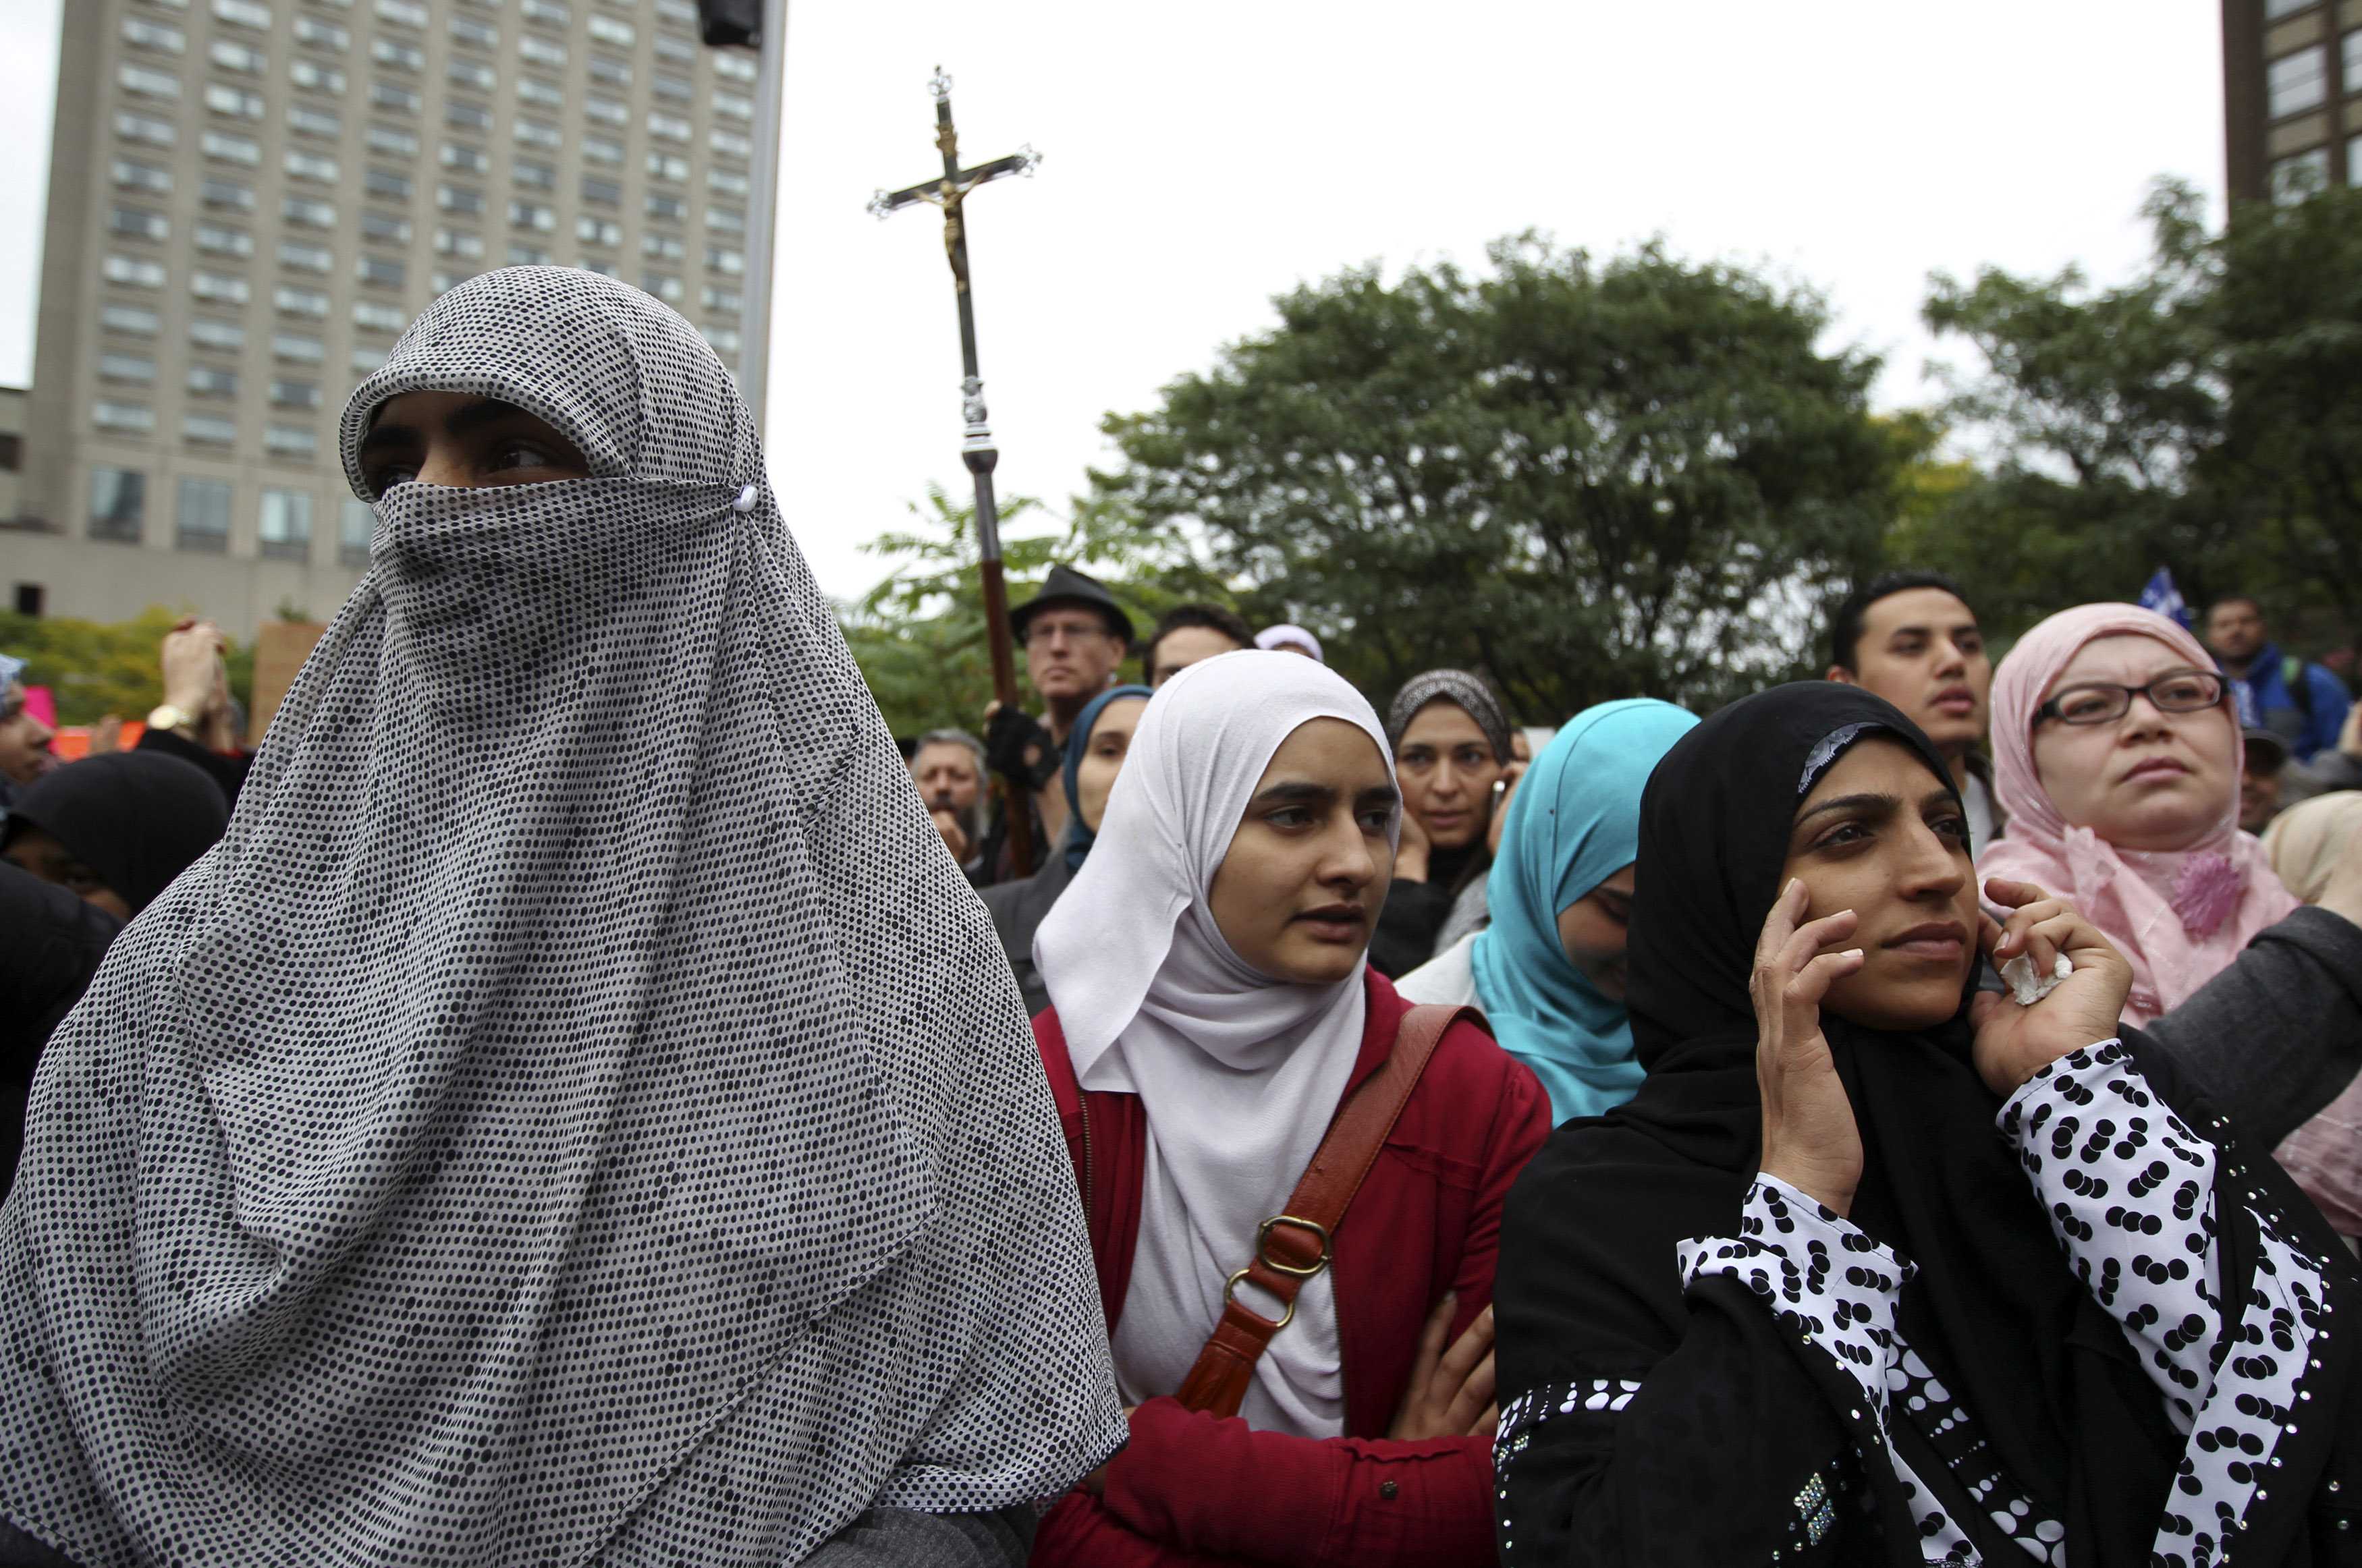 Μαζική συγκέντρωση μουσουλμάνων στο Μόντρεαλ